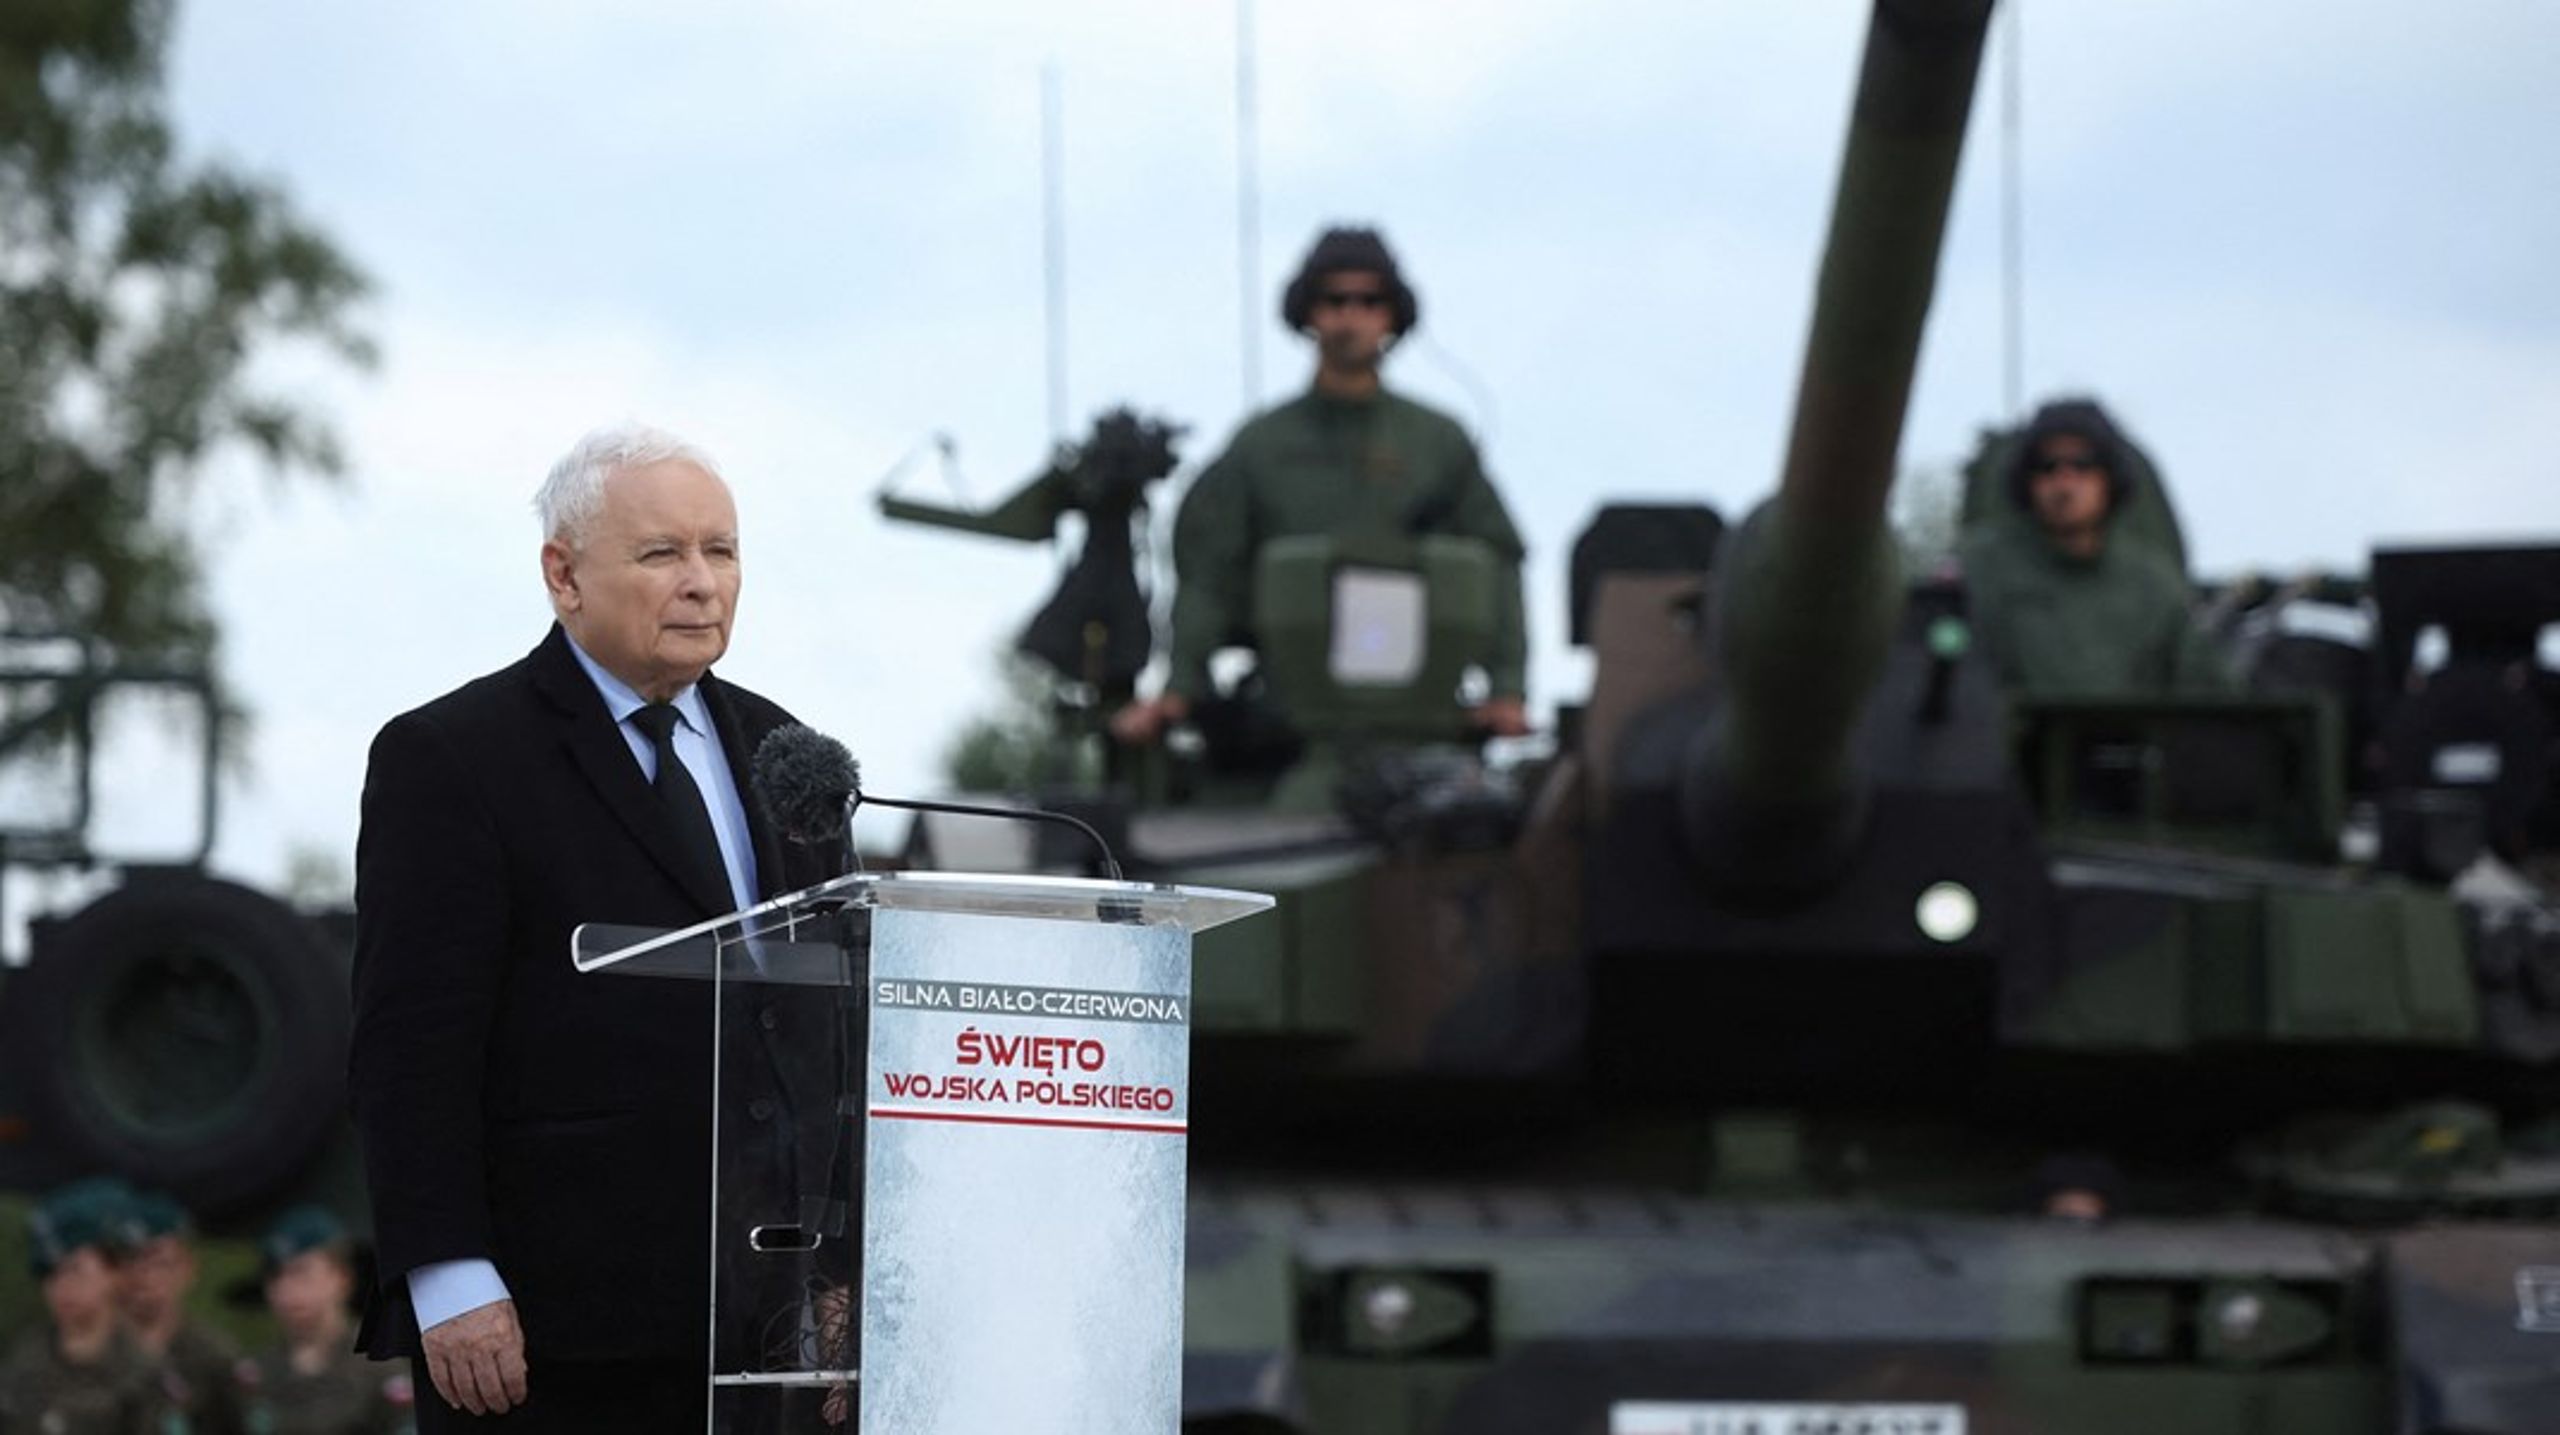 Jarosław Kaczyński taler ved en militærparade i august. Selv om Andrzej Duda er præsident, er det&nbsp;Kaczyński, der som leder af partiet Lov og Retfærdighed (PiS) reelt kontrollerer den politiske magt i Polen.&nbsp;